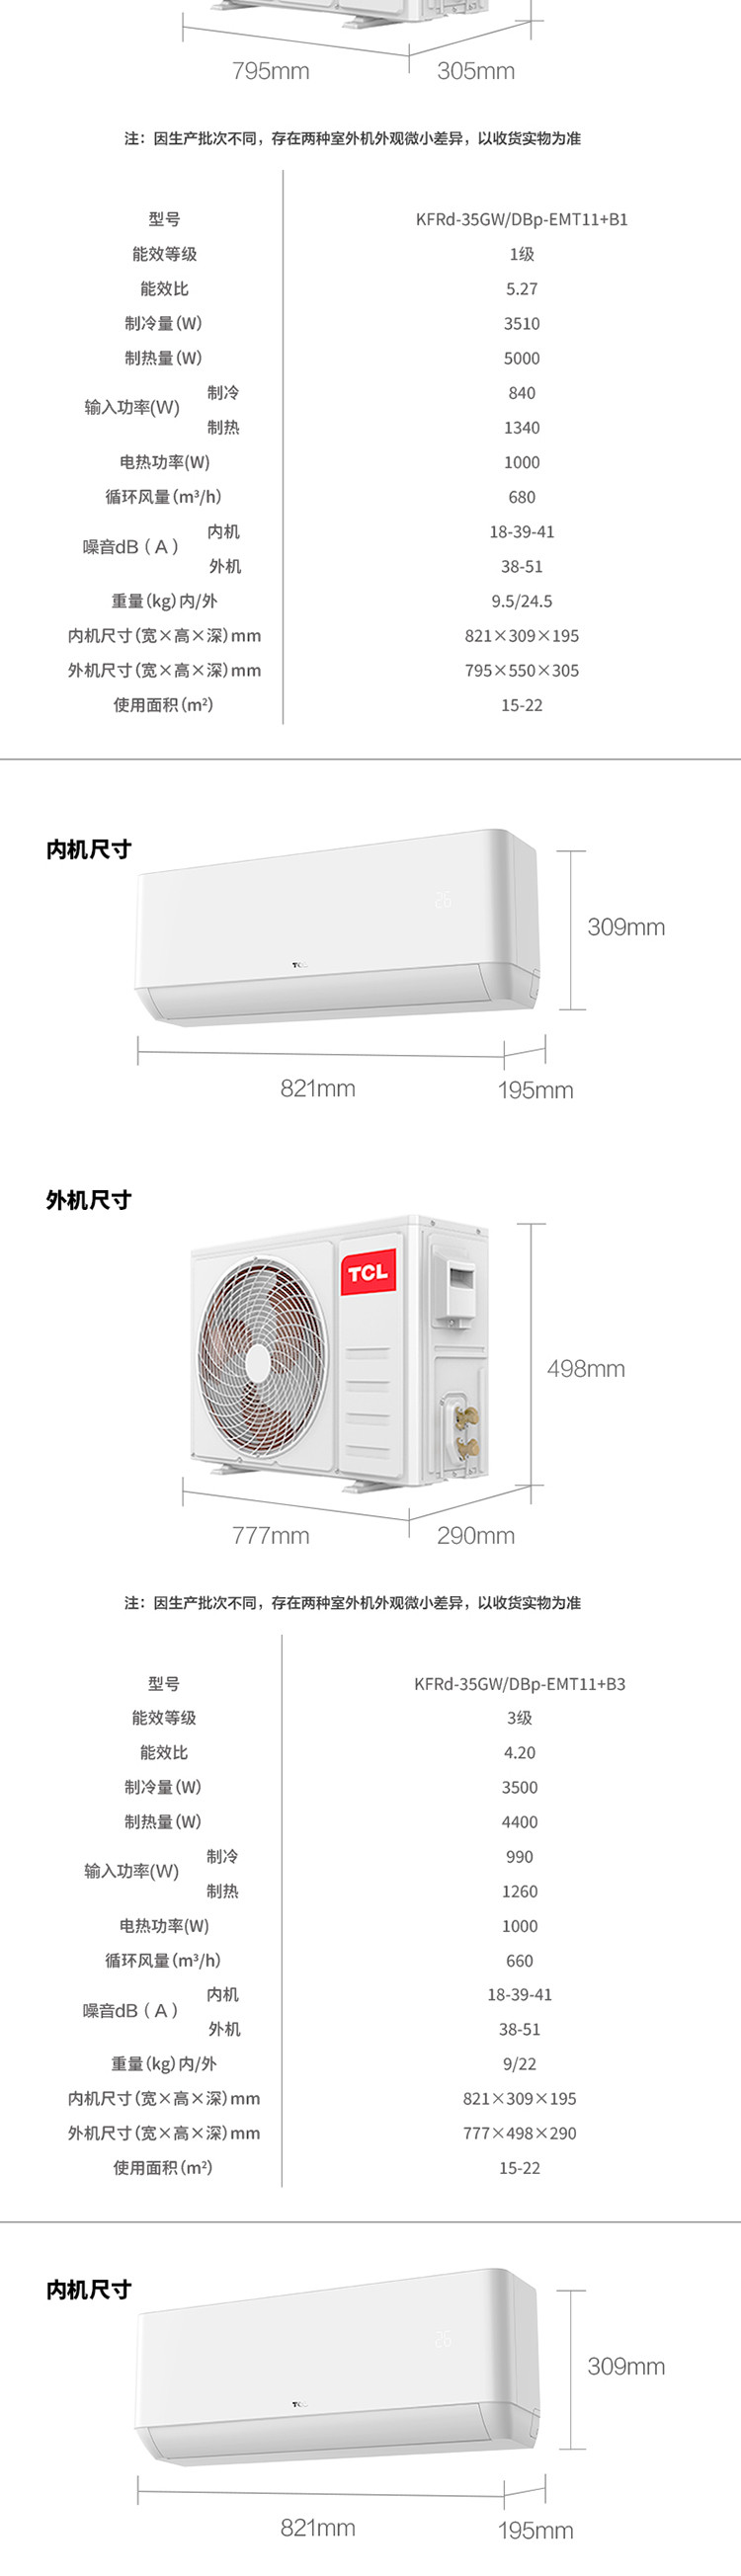 【券后2999元】TCL1P冷暖1级能效变频挂机空调KFRd-26GW/DBp-EMT11+B1